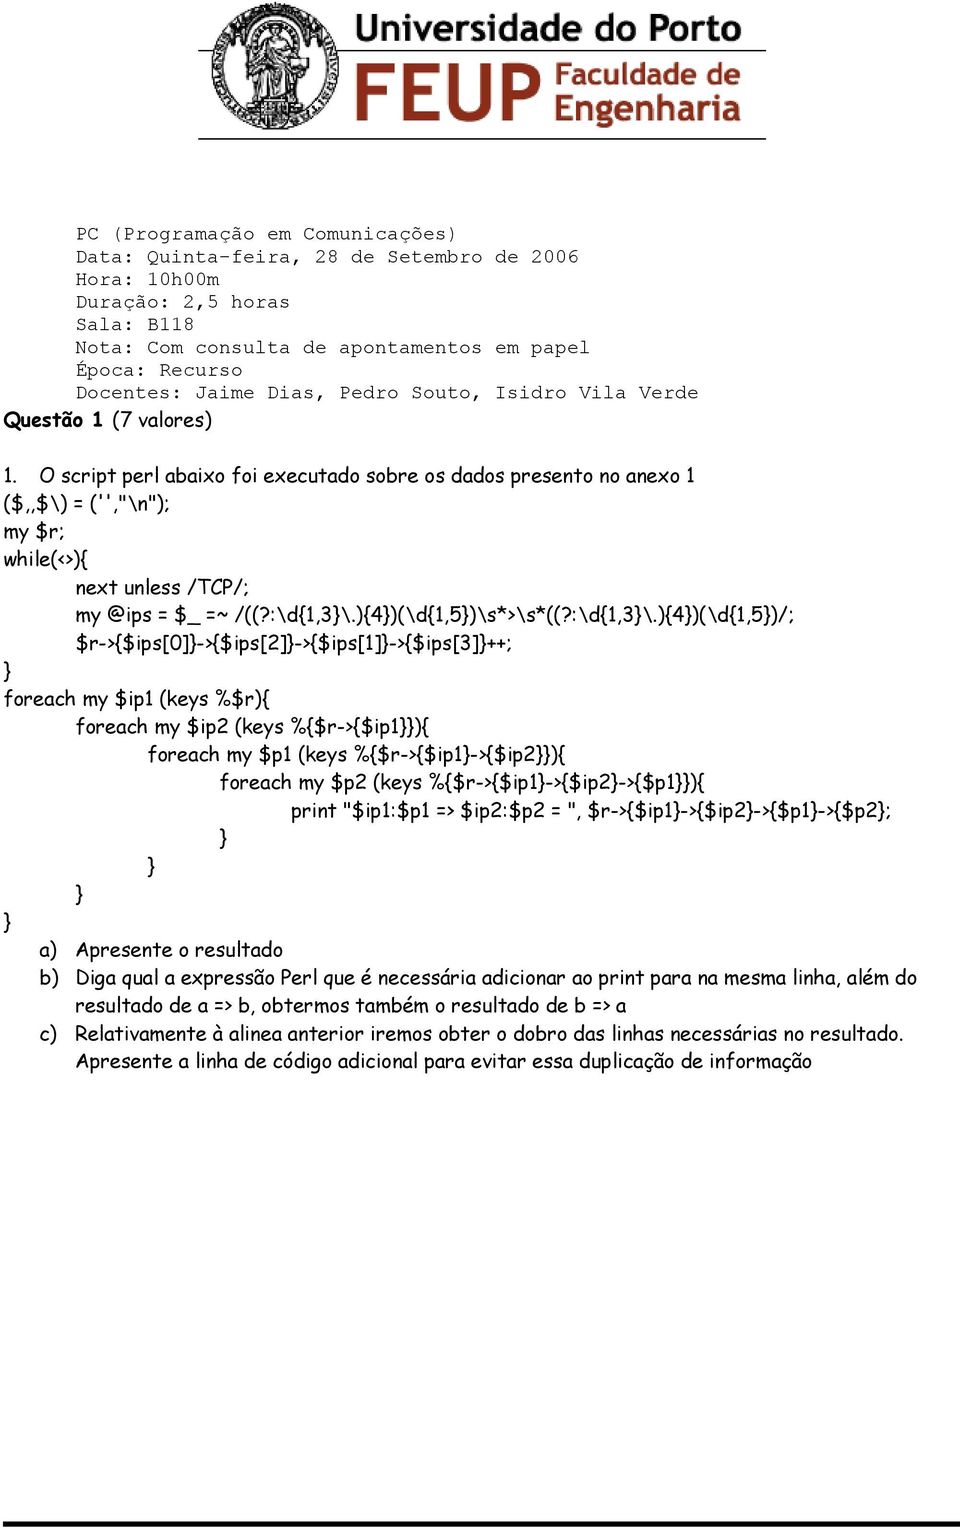 O script perl abaixo foi executado sobre os dados presento no anexo 1 ($,,$\) = ('',"\n"); my $r; while(<>){ next unless /TCP/; my @ips = $_ =~ /((?:\d{1,3\.